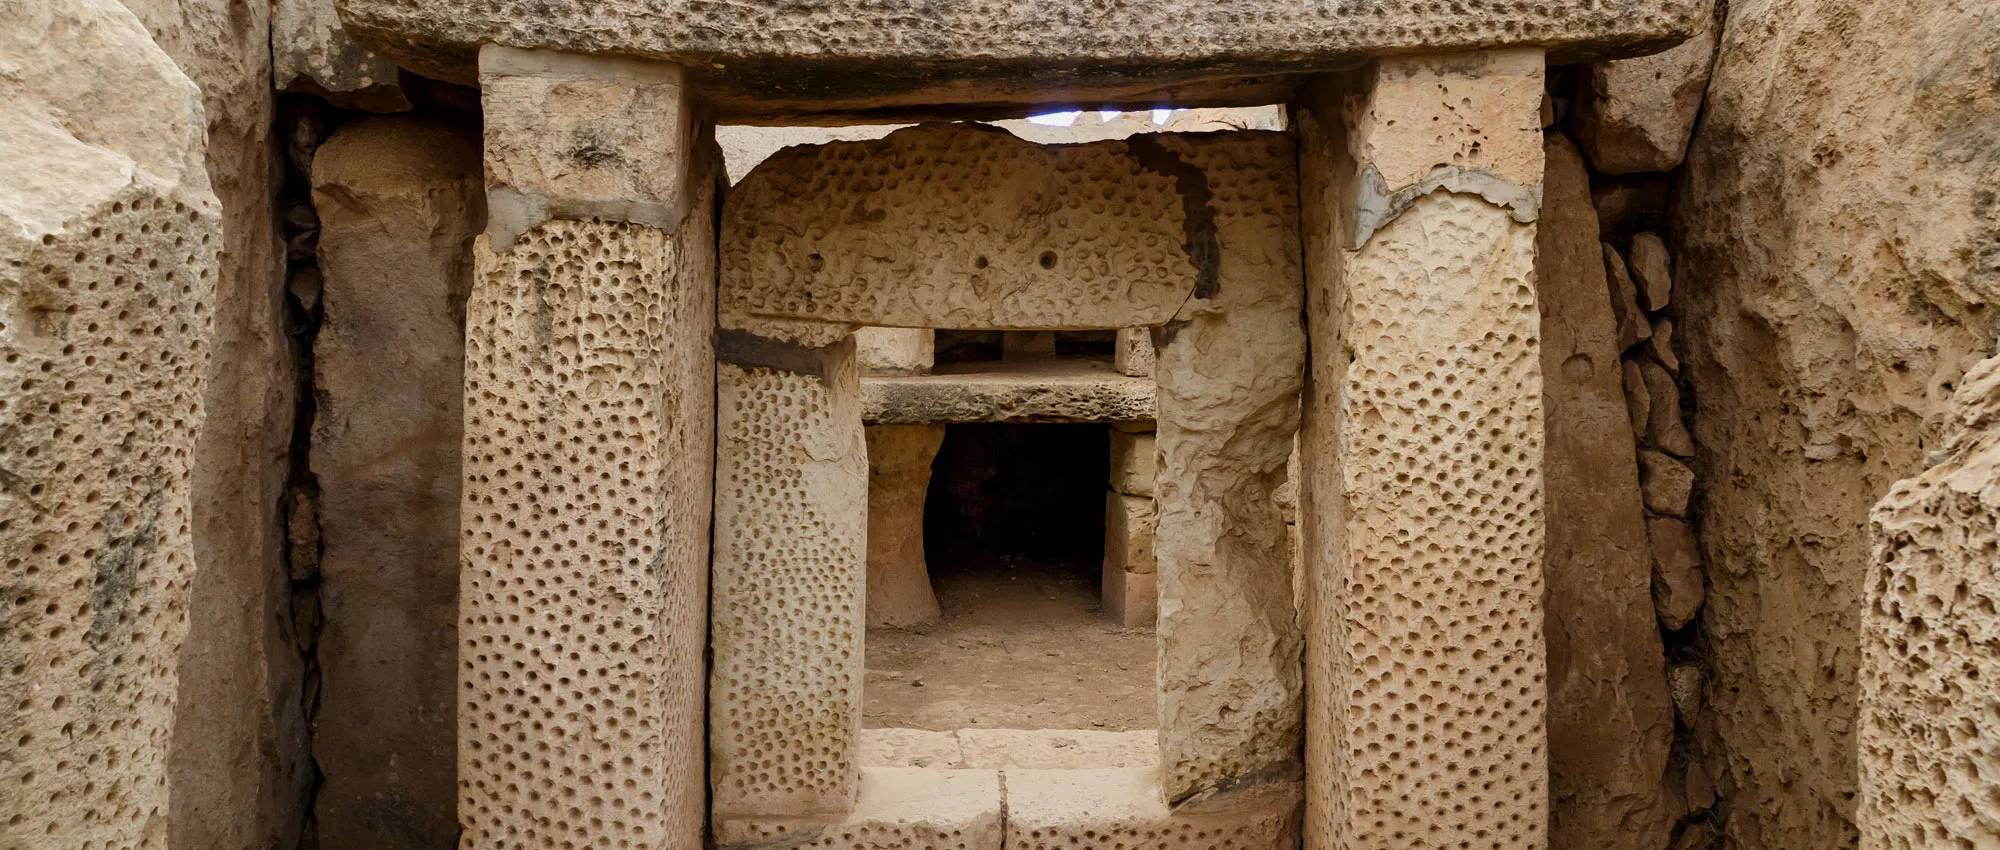 Hagar Qim in Malta, Europe | Excavations - Rated 3.7